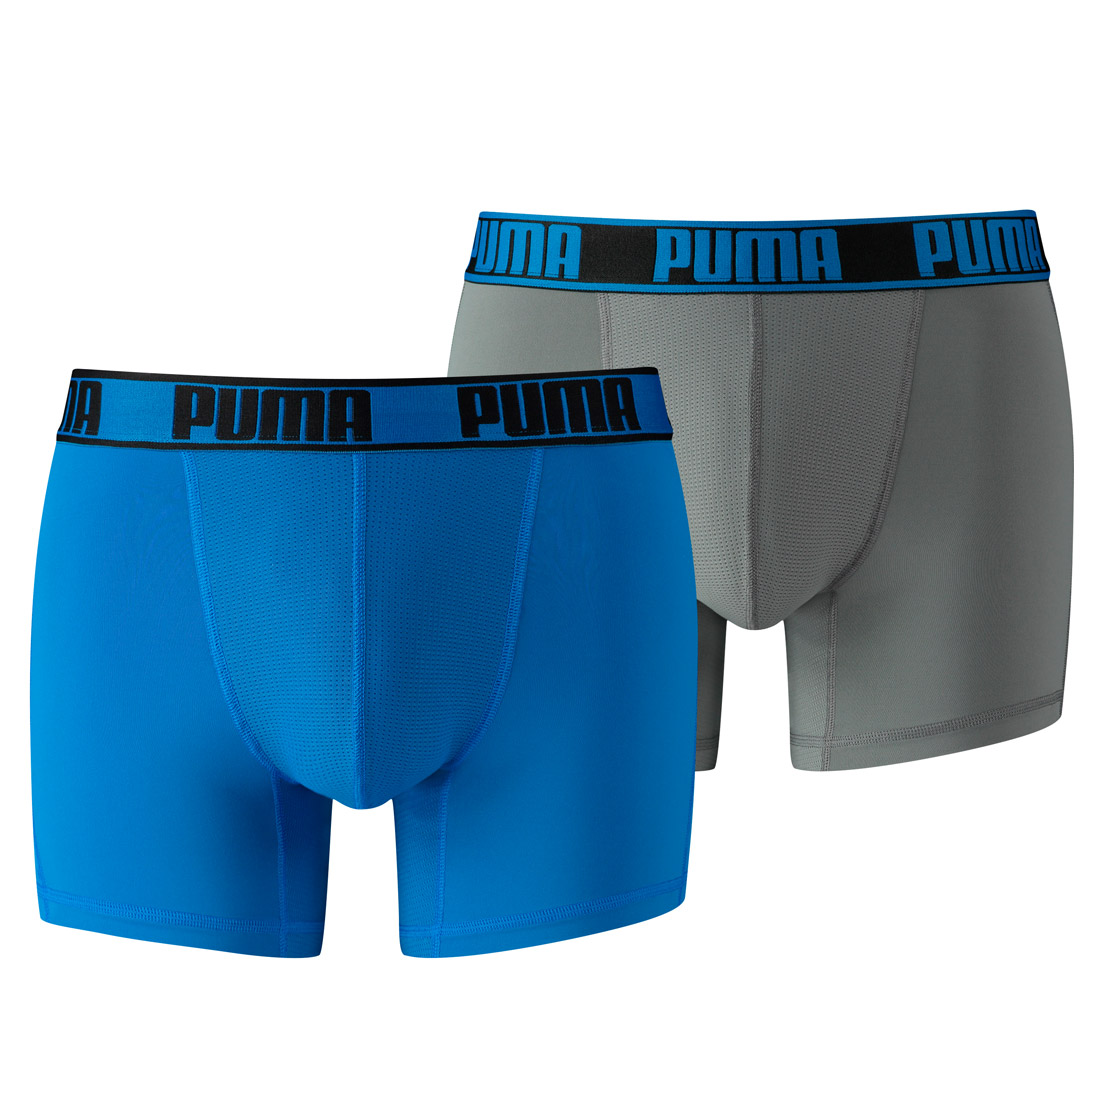 2 er Pack Puma Herren Active Boxer Shorts Unterwäsche Sport